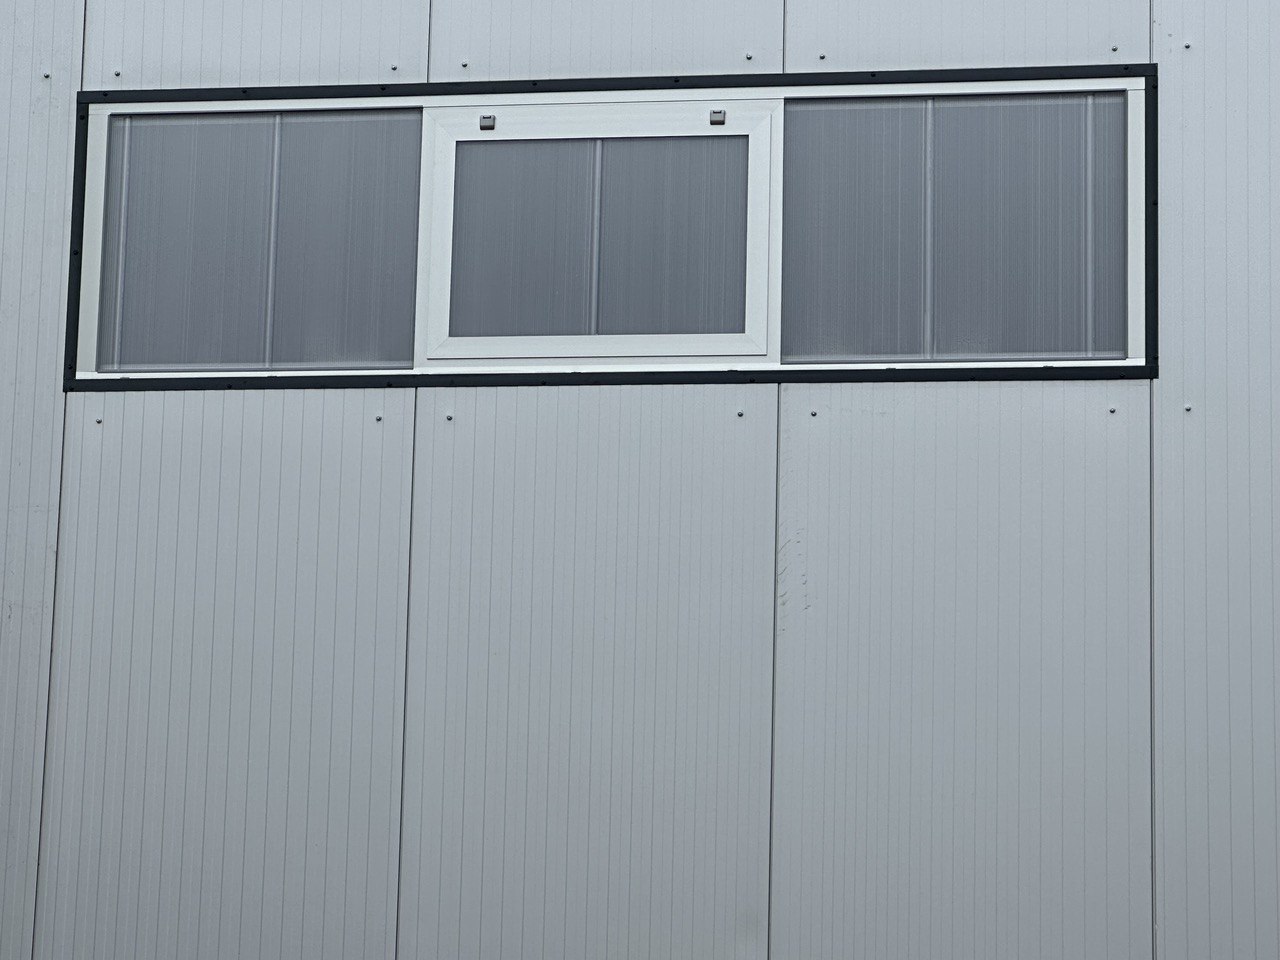 Остекление производственного здания. Модульная поликарбонатная система 25 мм с фрамугами для проветривания.